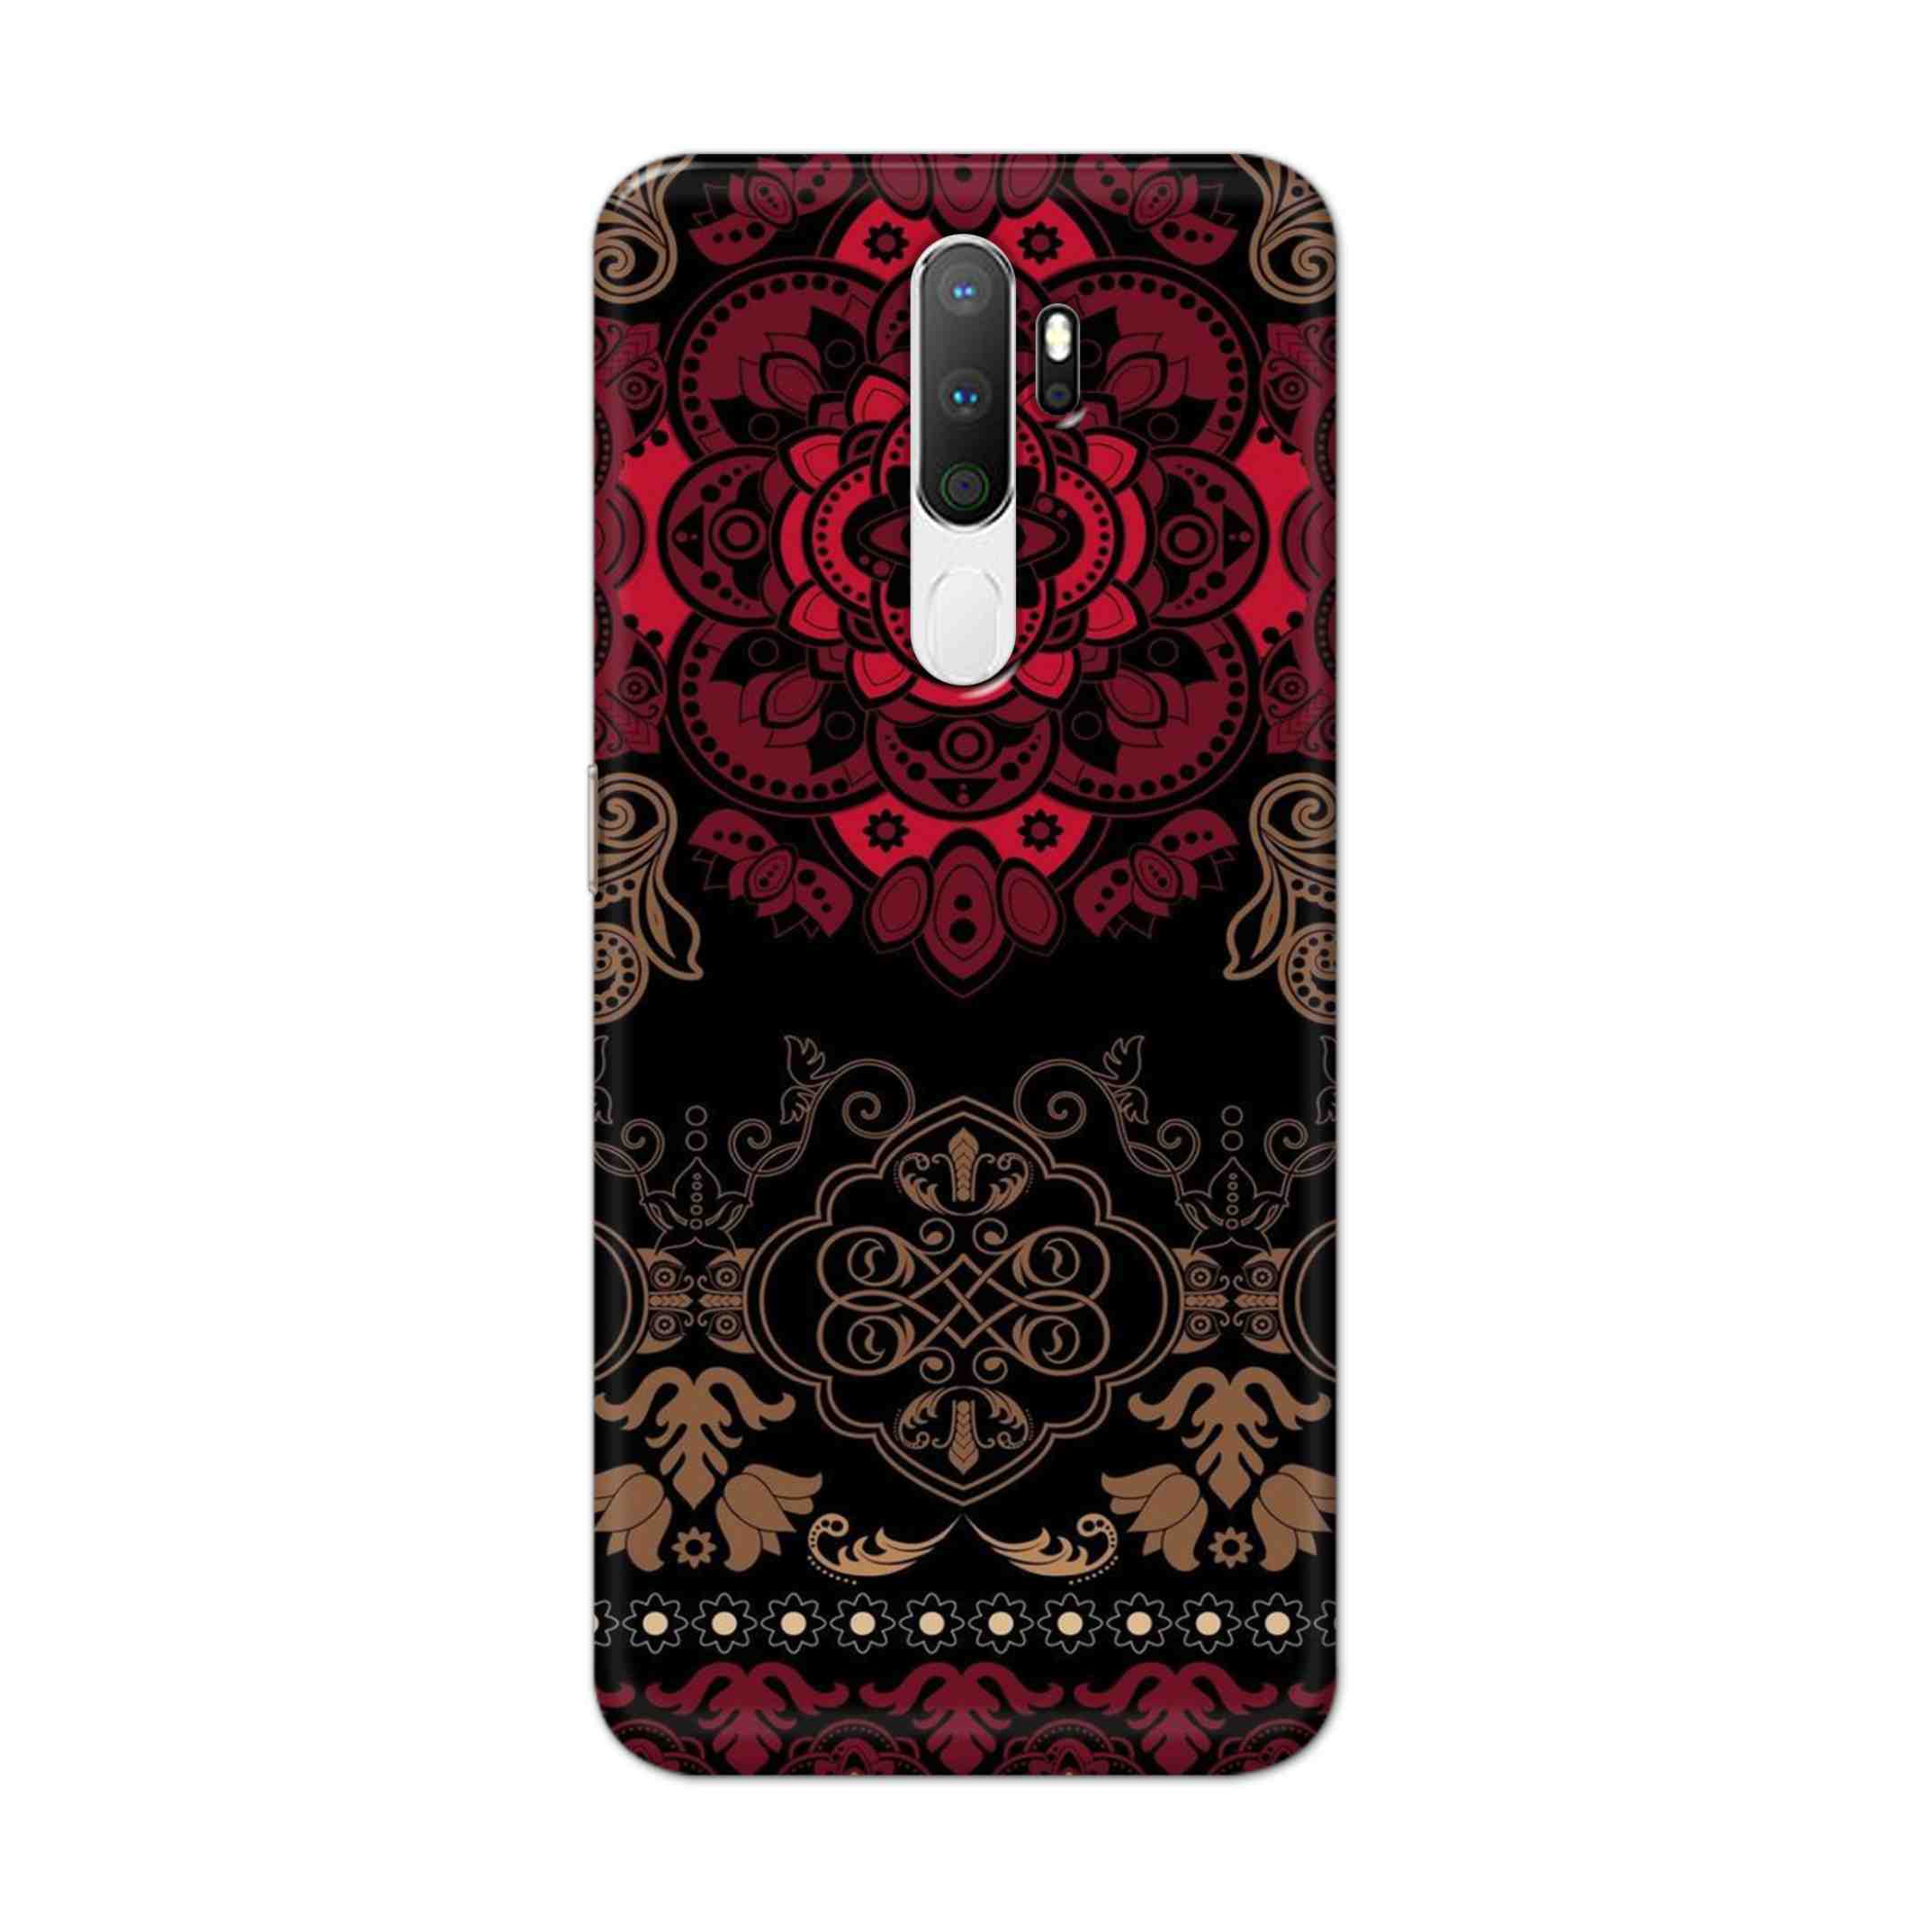 Buy Christian Mandalas Hard Back Mobile Phone Case Cover For Oppo A5 (2020) Online